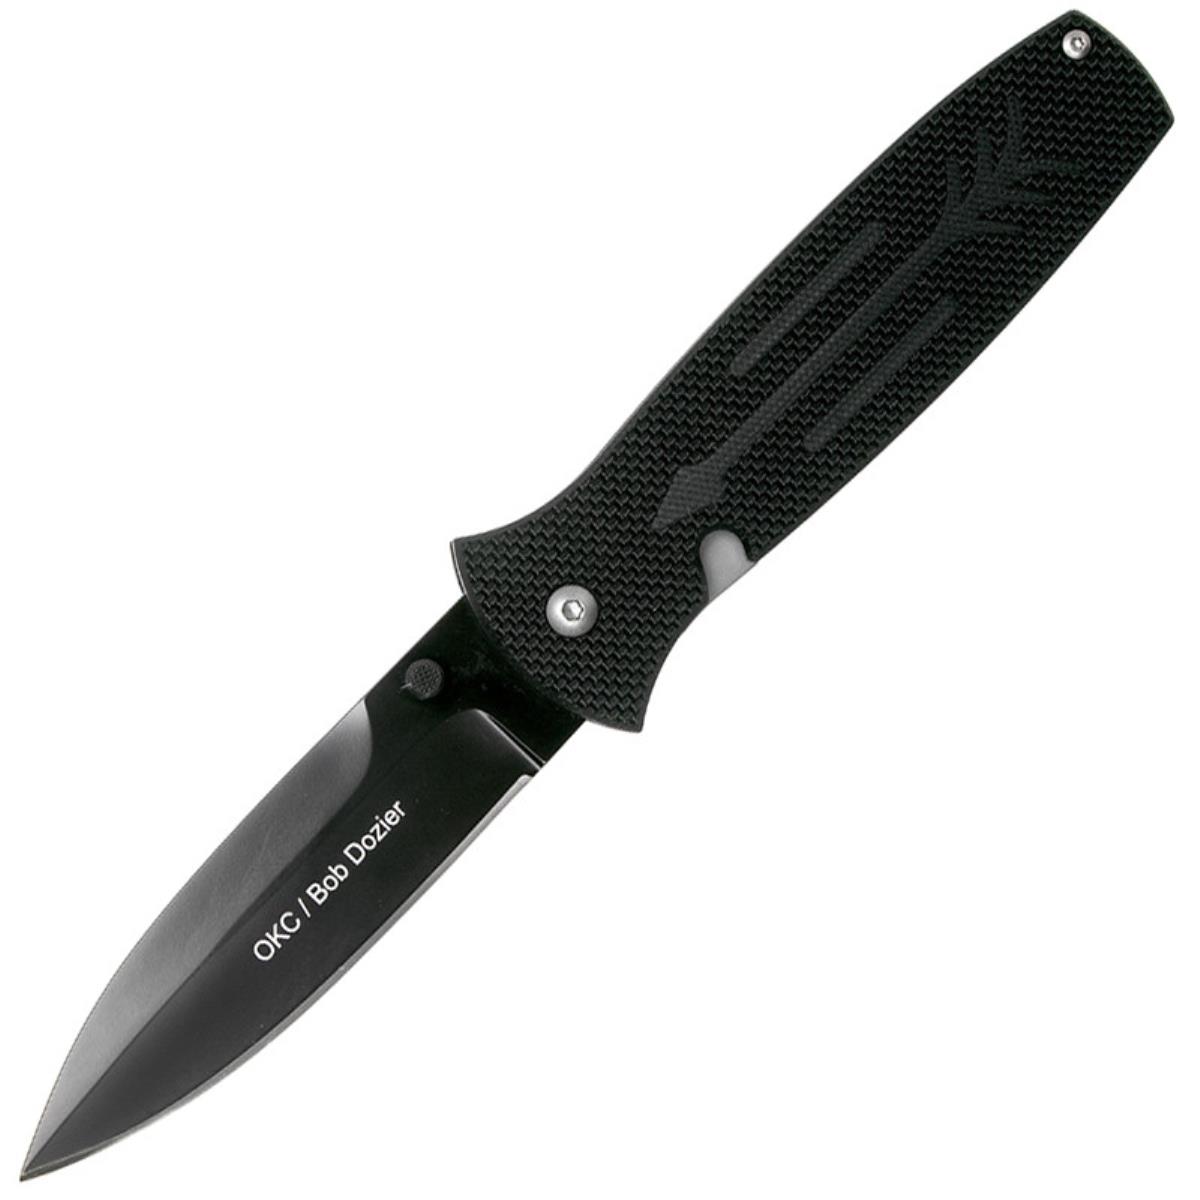 Нож OKC Dozier Arrow складн.,чёрная рукоять, G10, клинок D2, чёрное покрытие (9101)  ONTARIO нож складной ontario rat 1 сталь d2 клинок satin рукоять orange grn